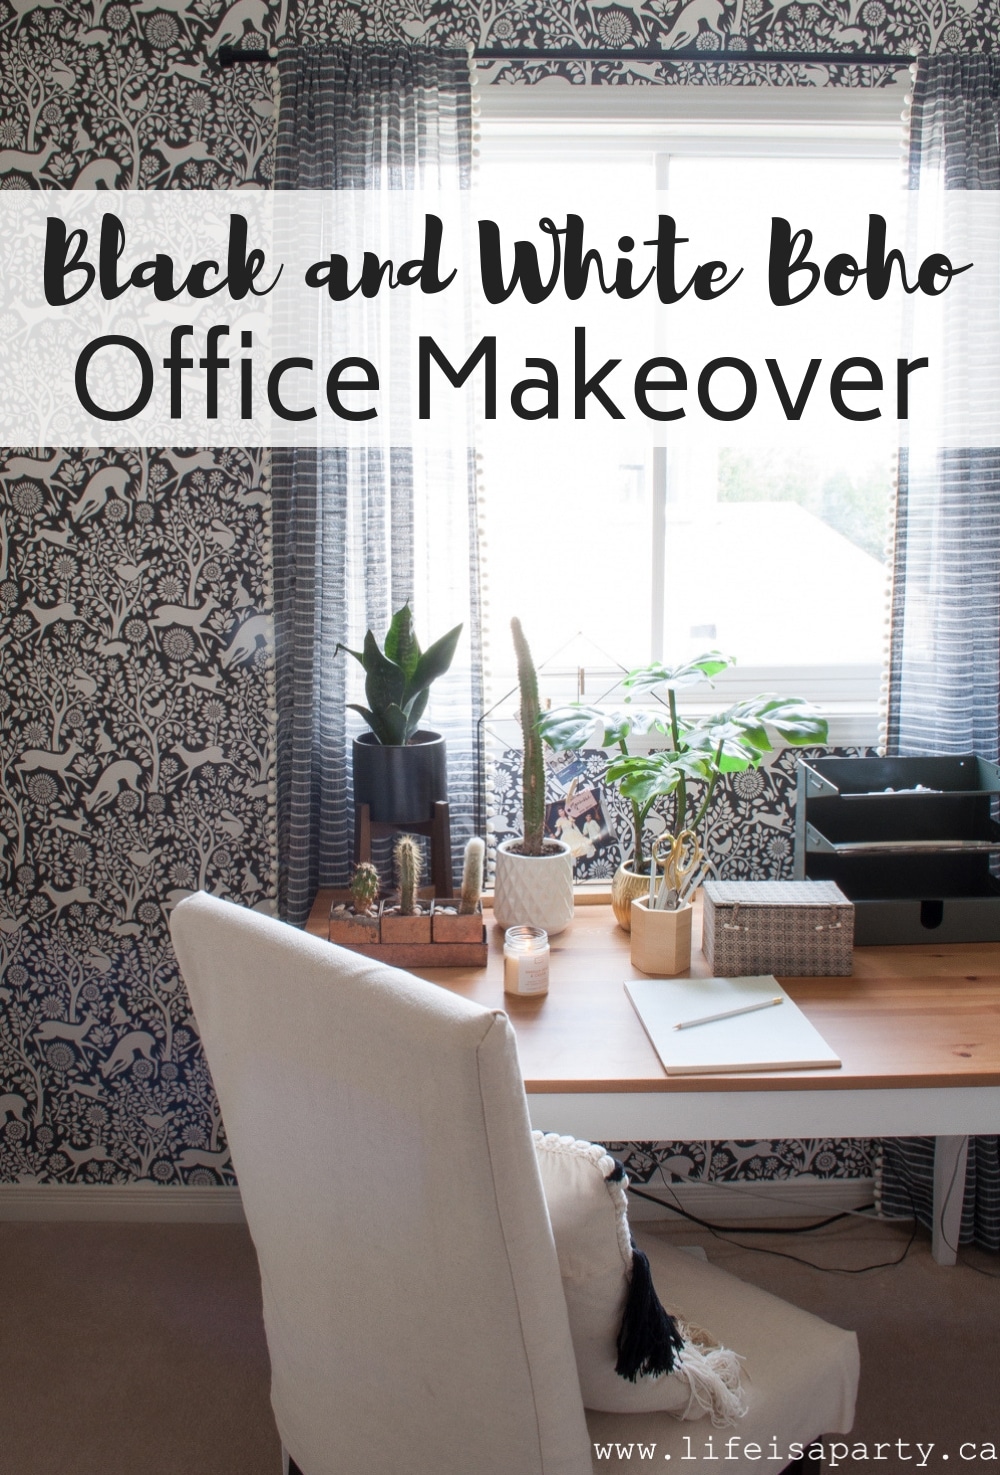 Black and White Boho Office Makeover